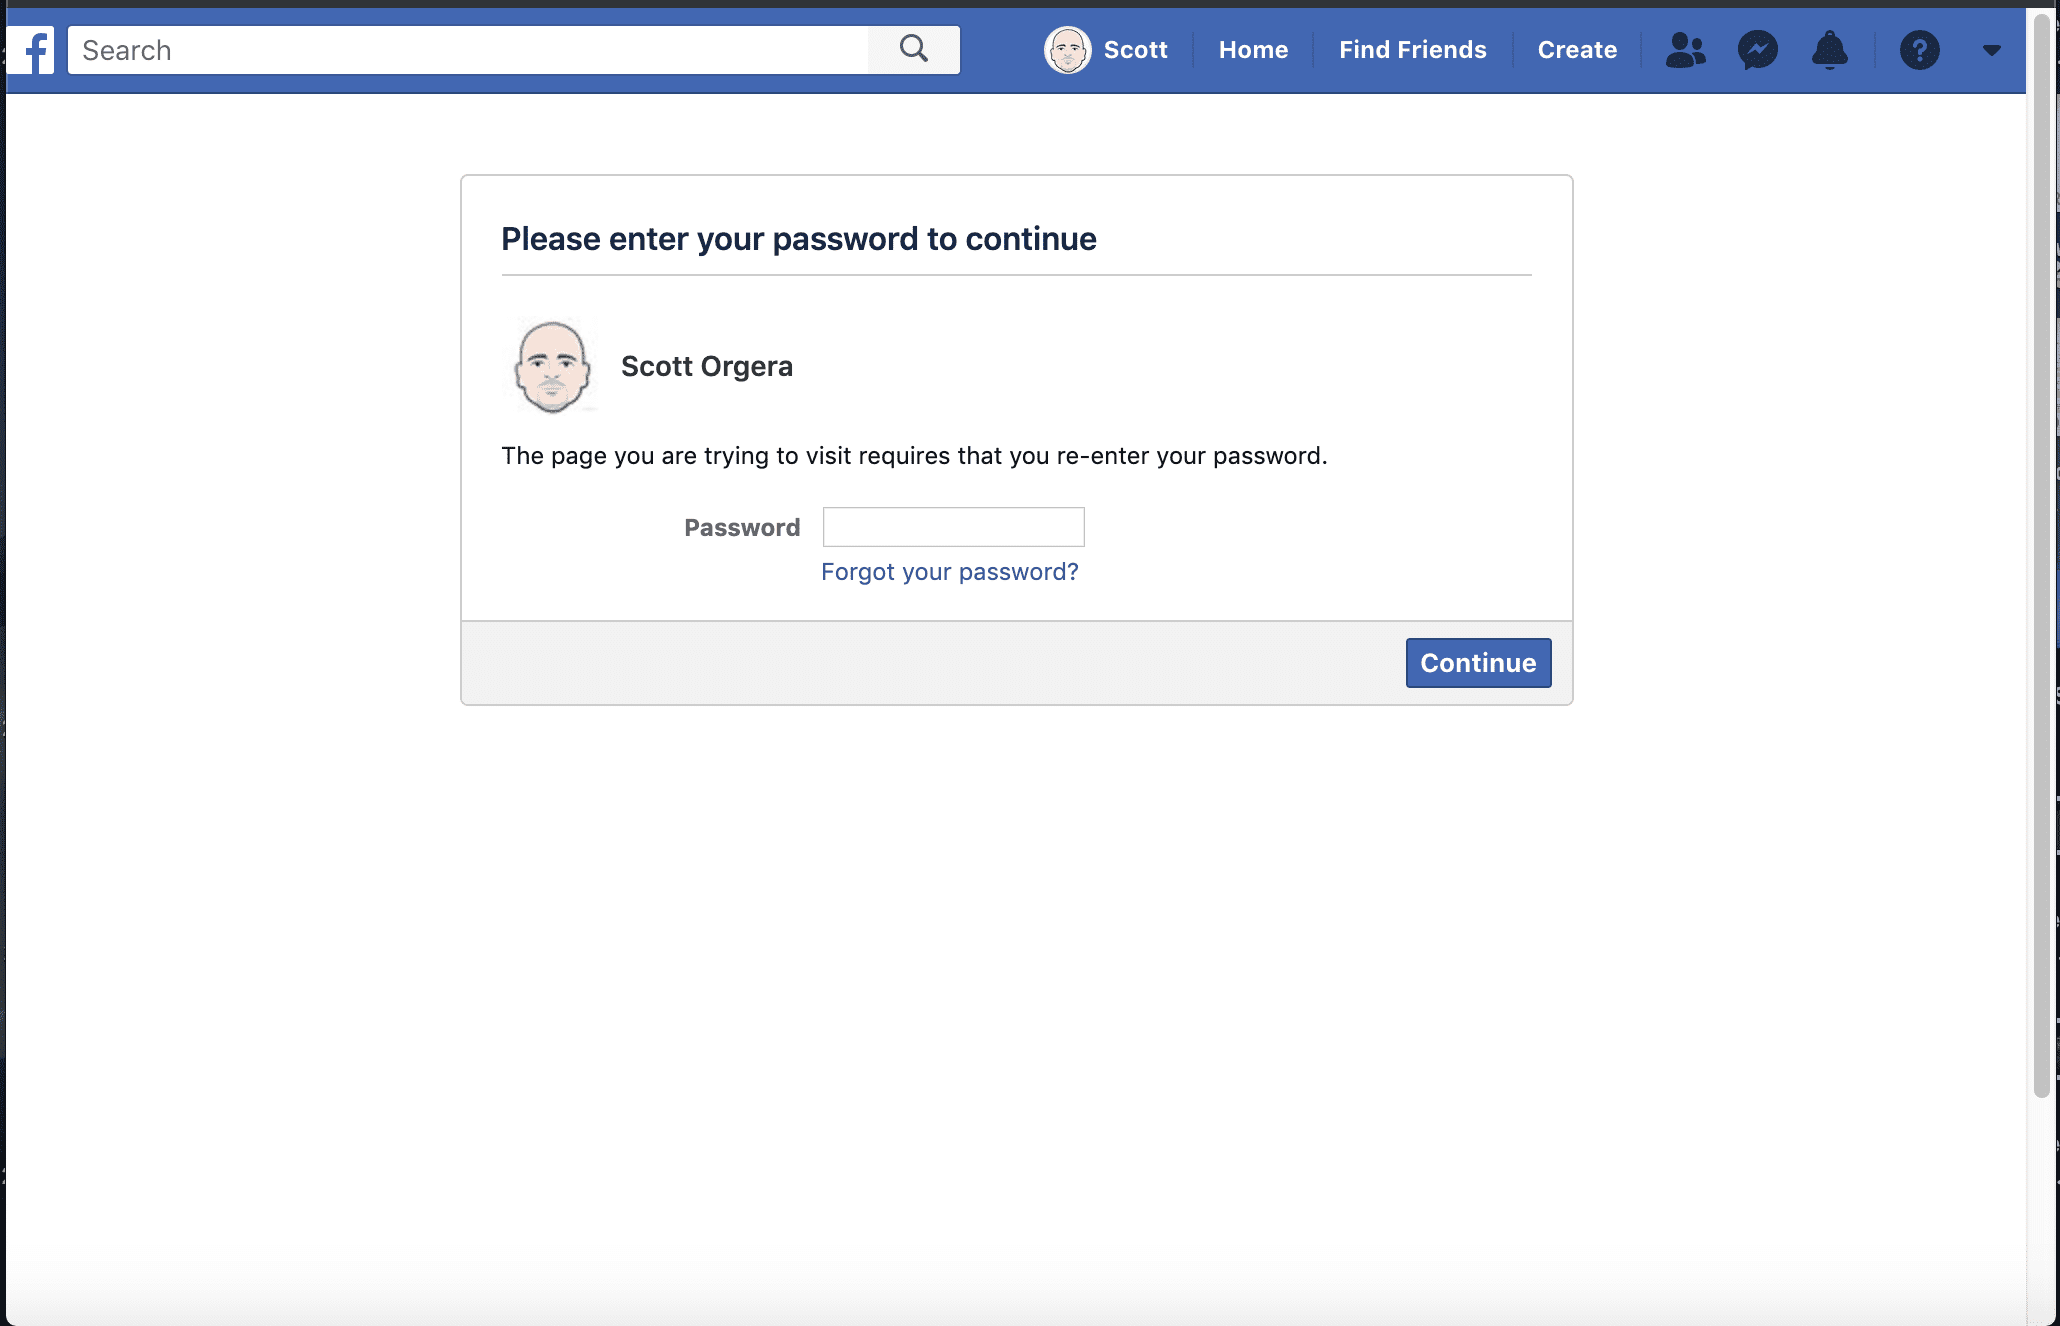 снимок экрана с запросом пароля учетной записи Facebook